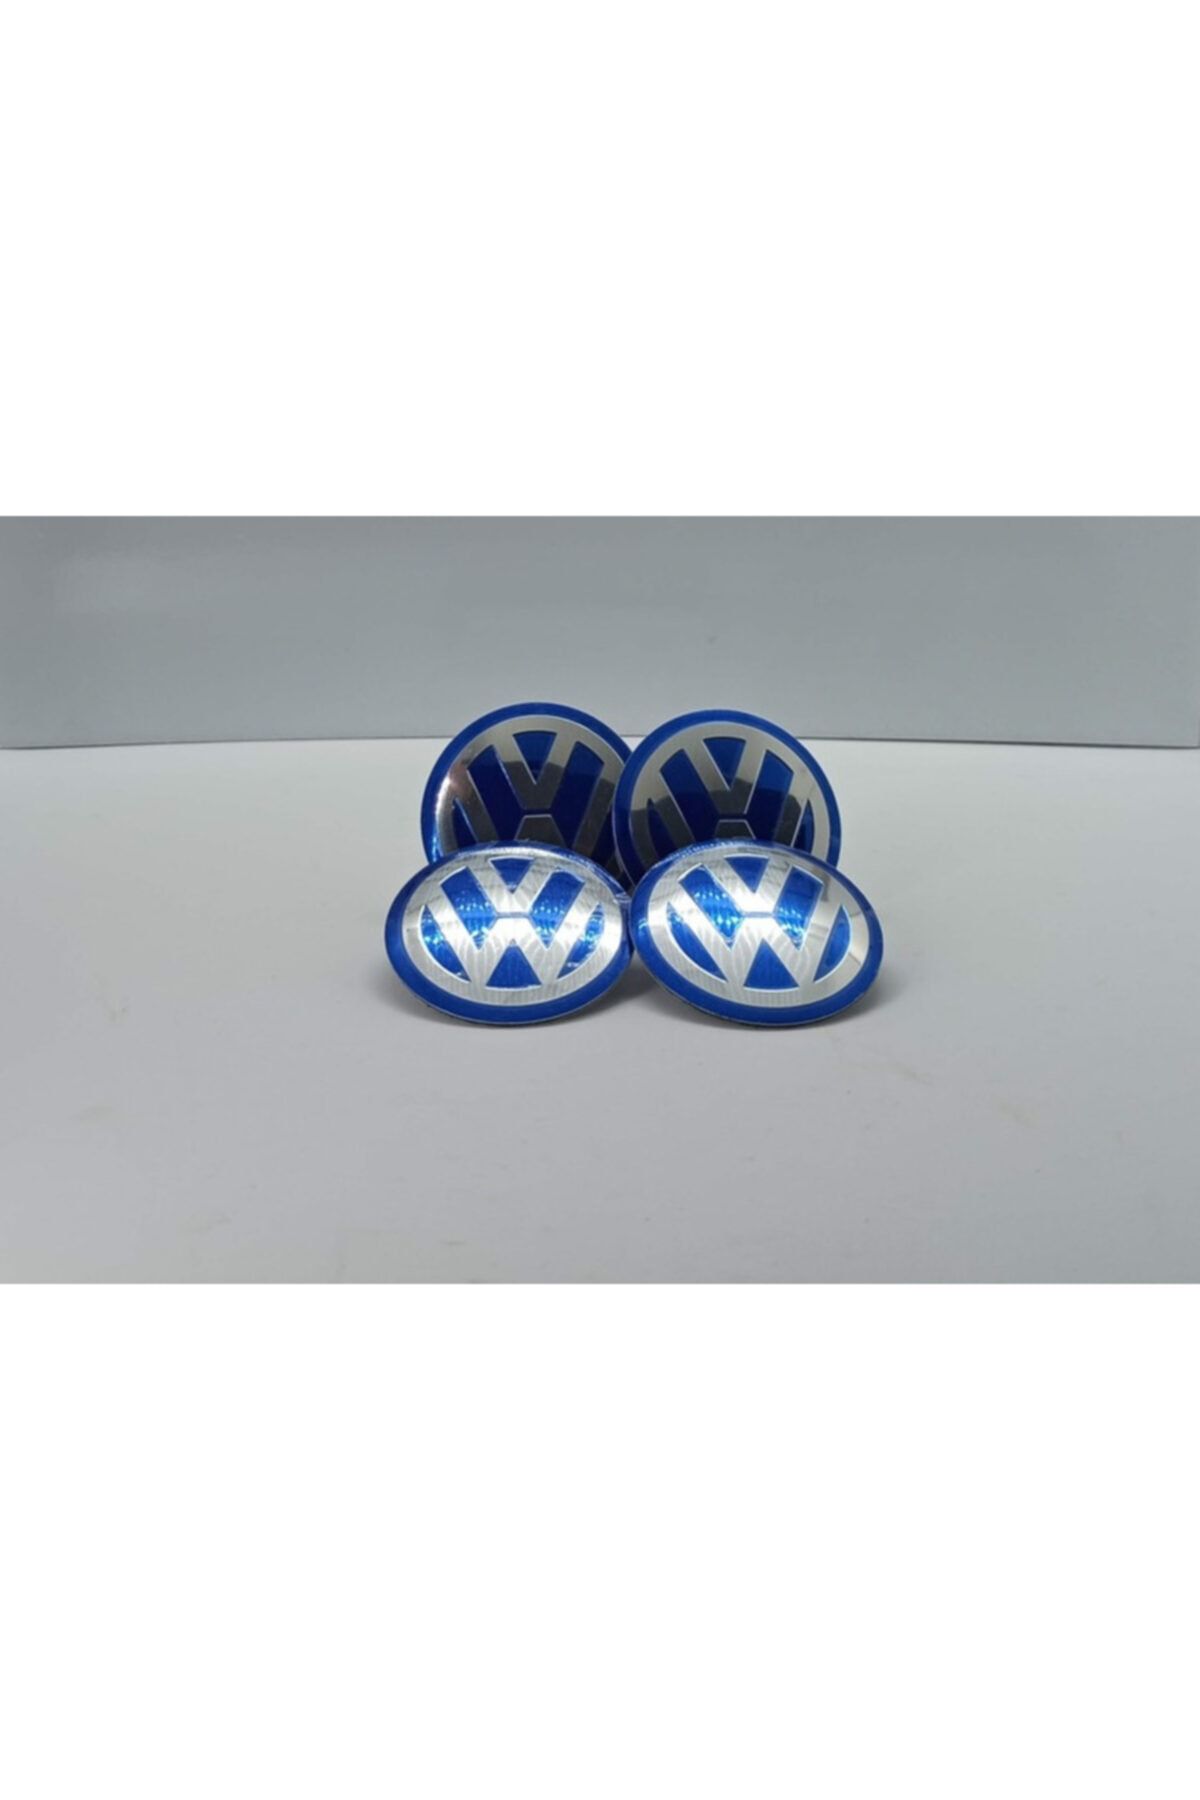 3M Jant Göbek Arması - Volkswagen Jant Göbek Logosu Yapıştırma Siyah